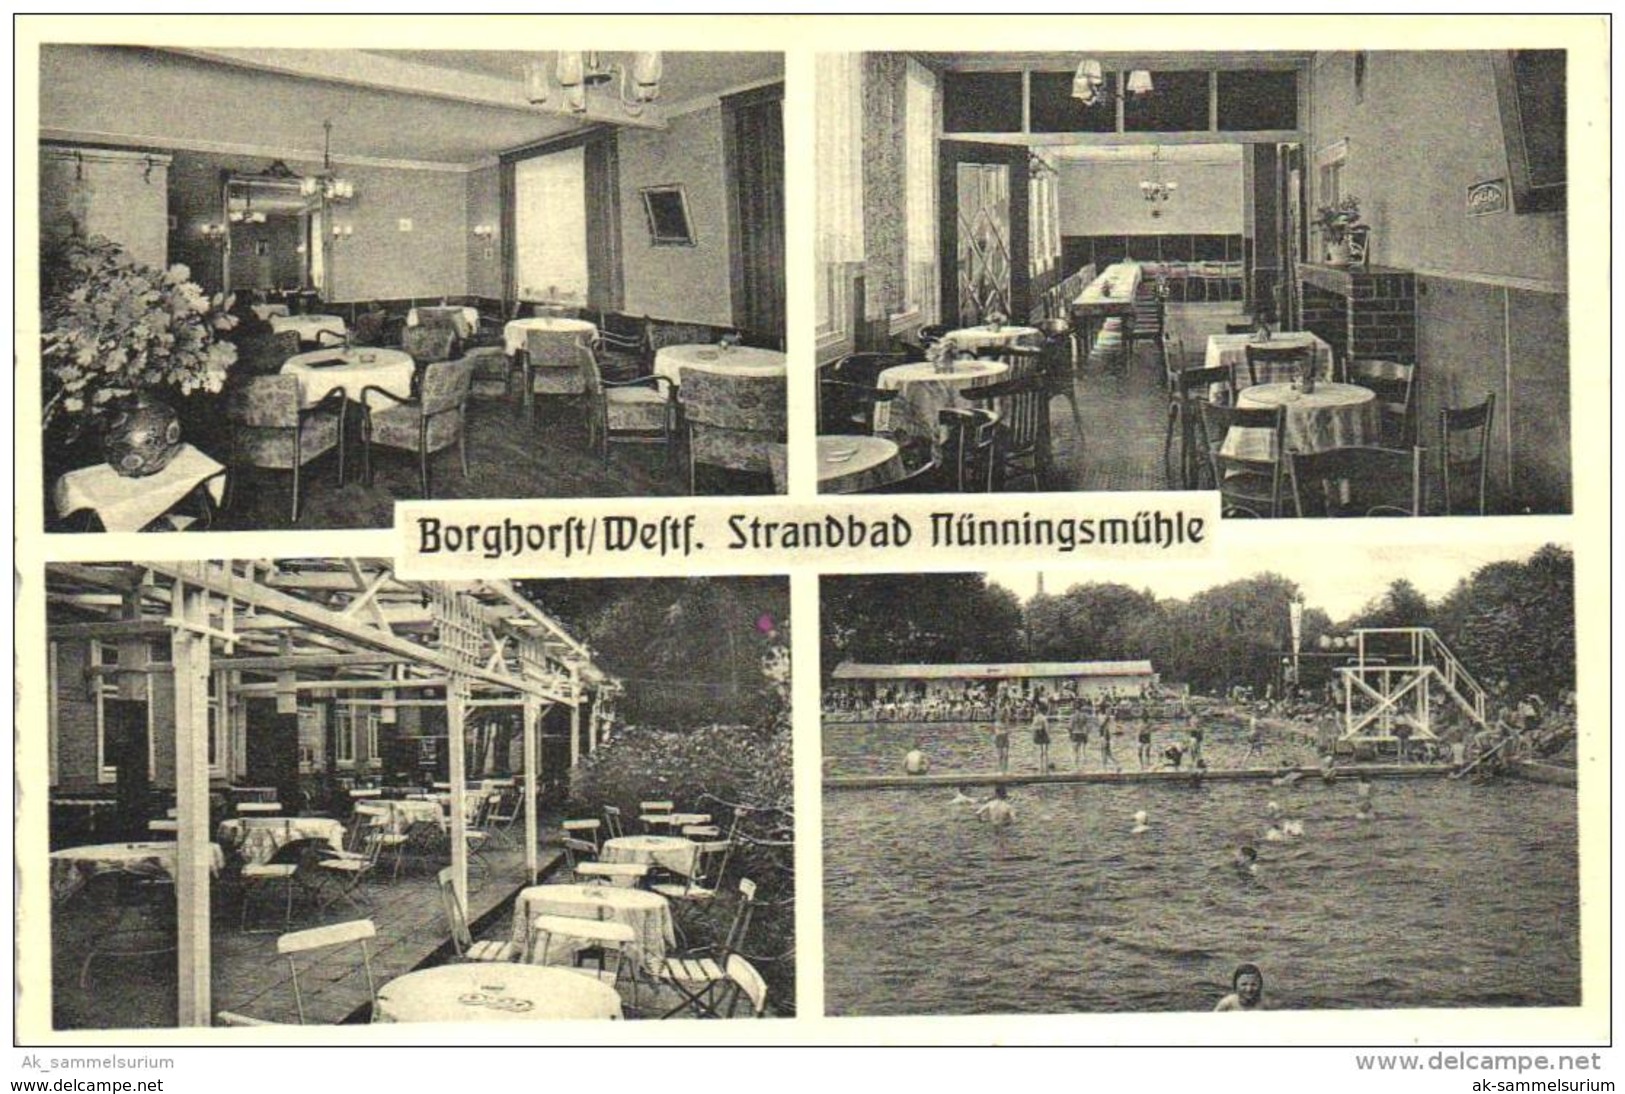 Borghorst / Steinfurt / Nünningsmühle / Strandbad (D-KW119) - Steinfurt